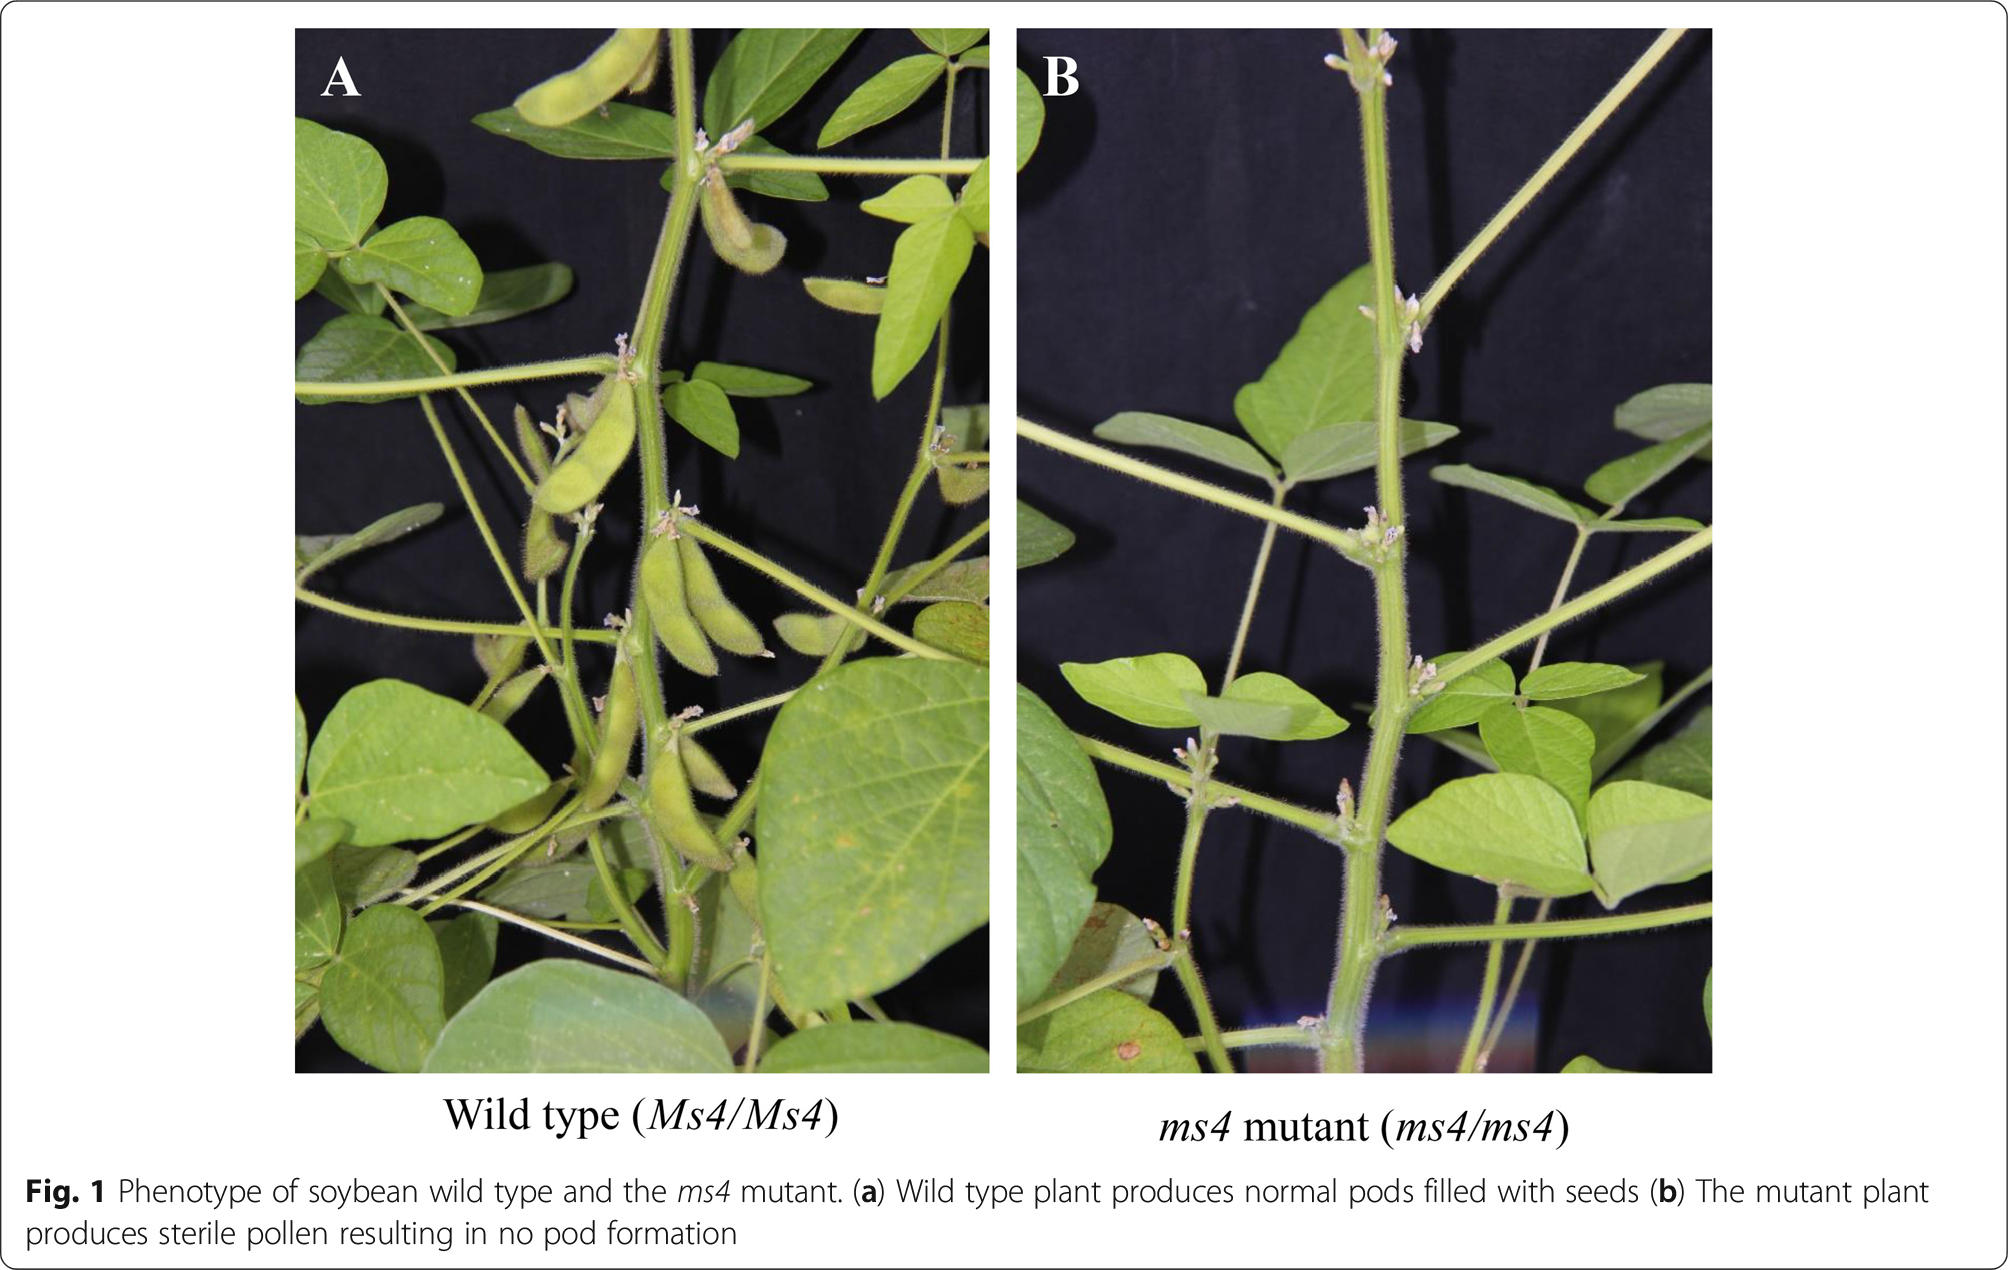 Mendu lab discovered genetic mechanism behind soybean male sterile line